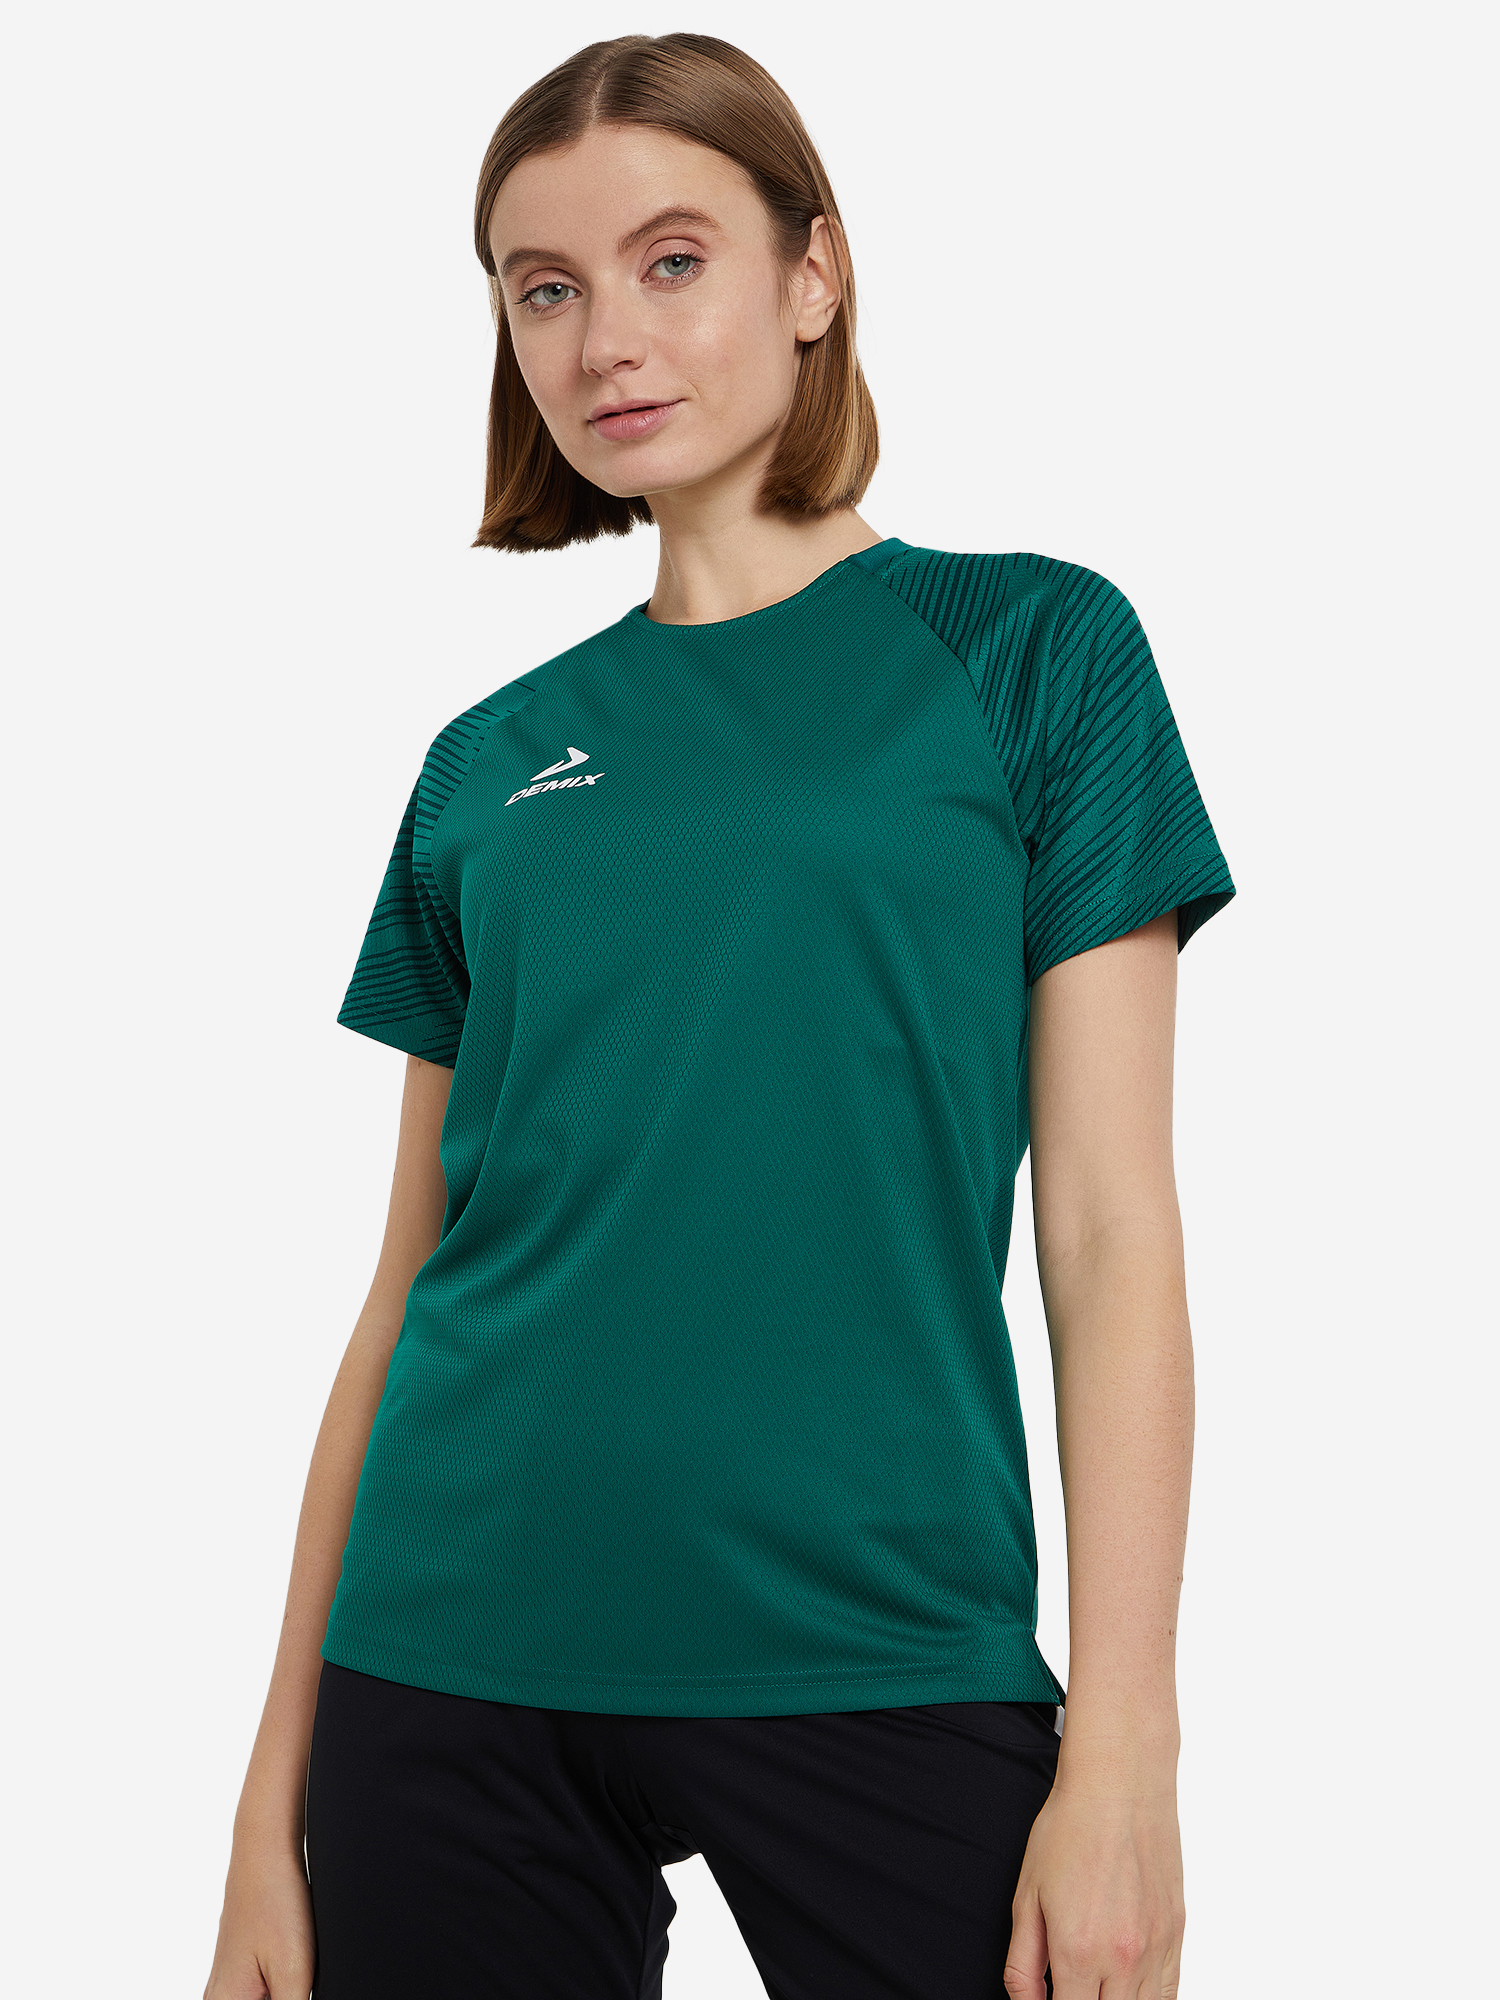 Женская футболка Demix Winger в зеленом цвете